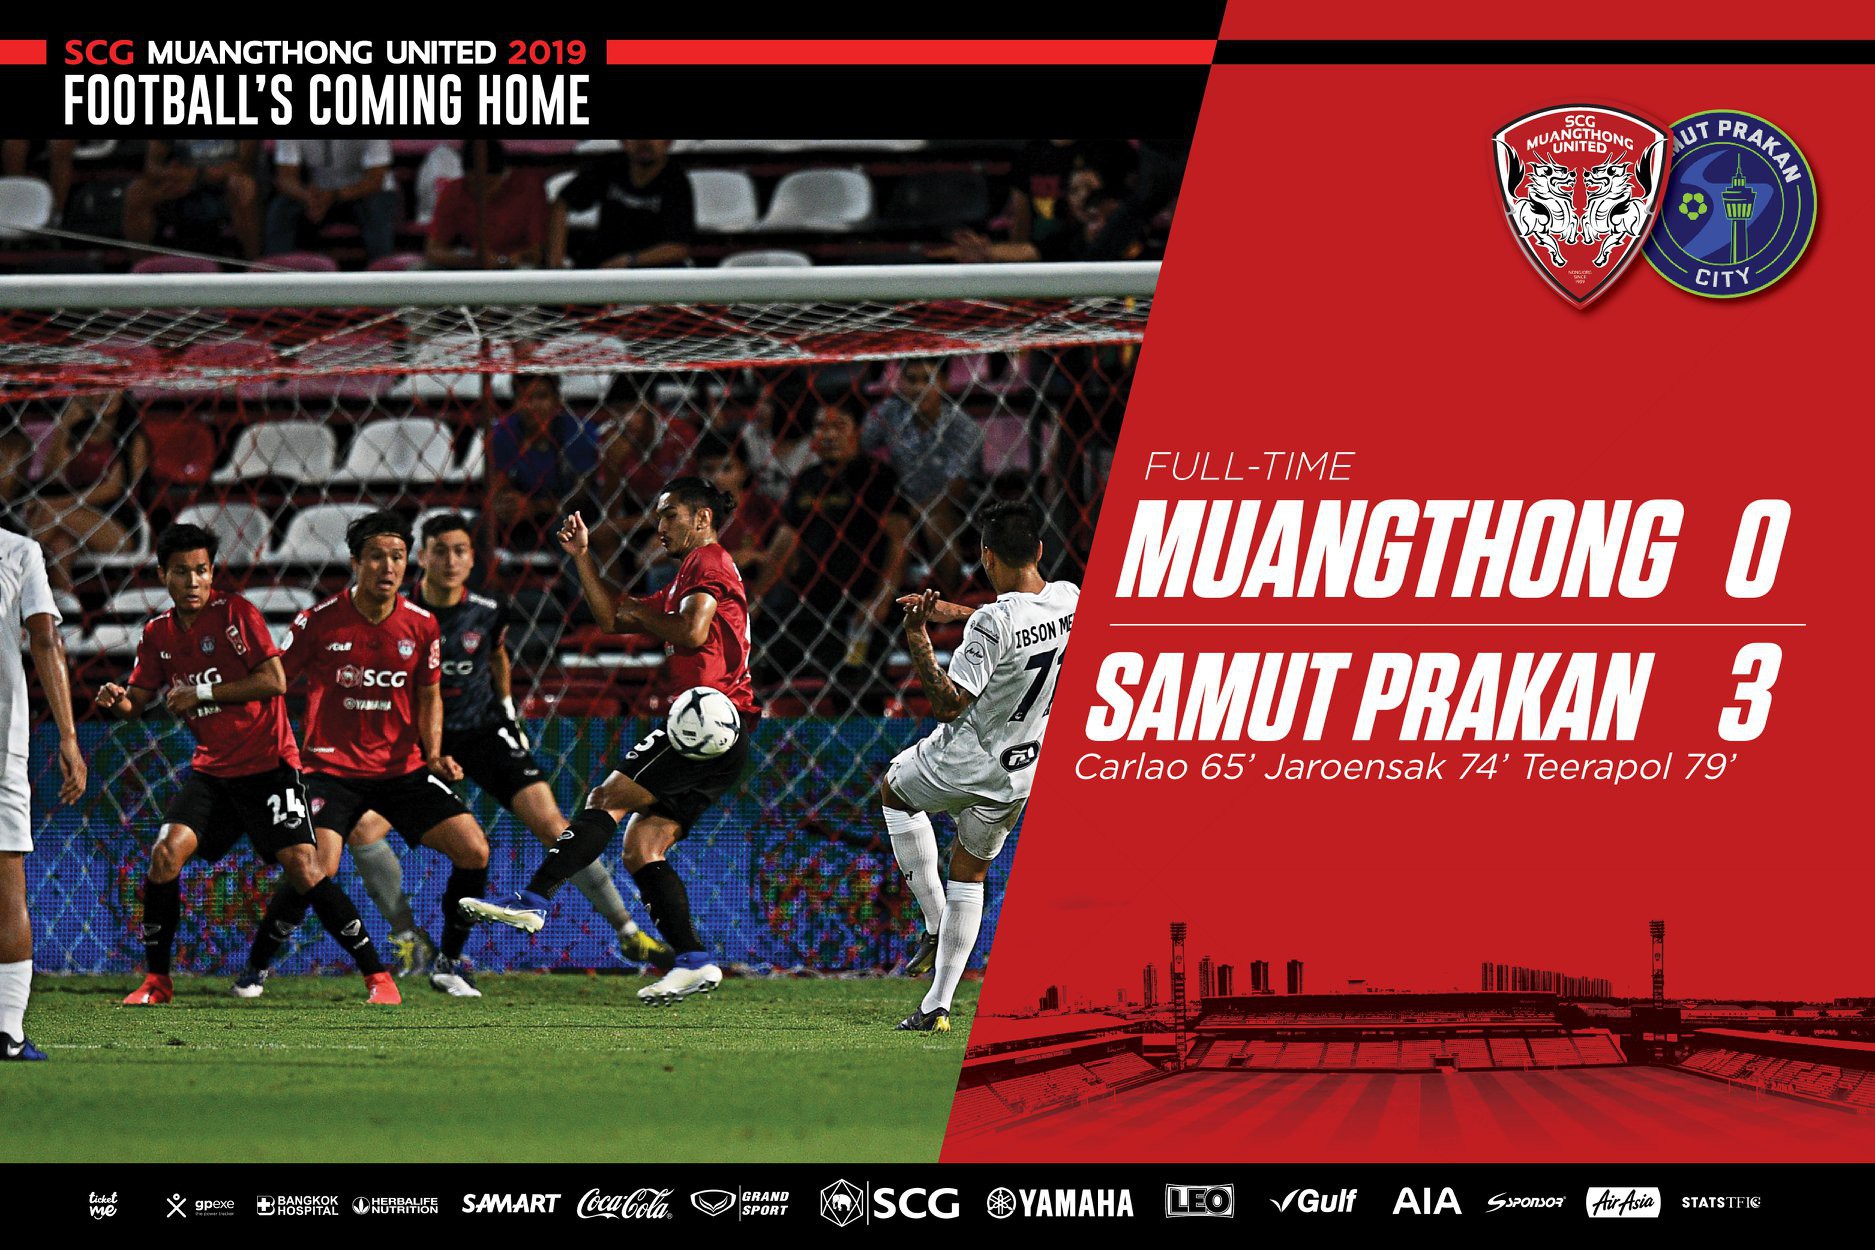 Văn lâm xuất sắc vẫn không thể giúp Muathong United tránh trận thua đậm - Ảnh 2.